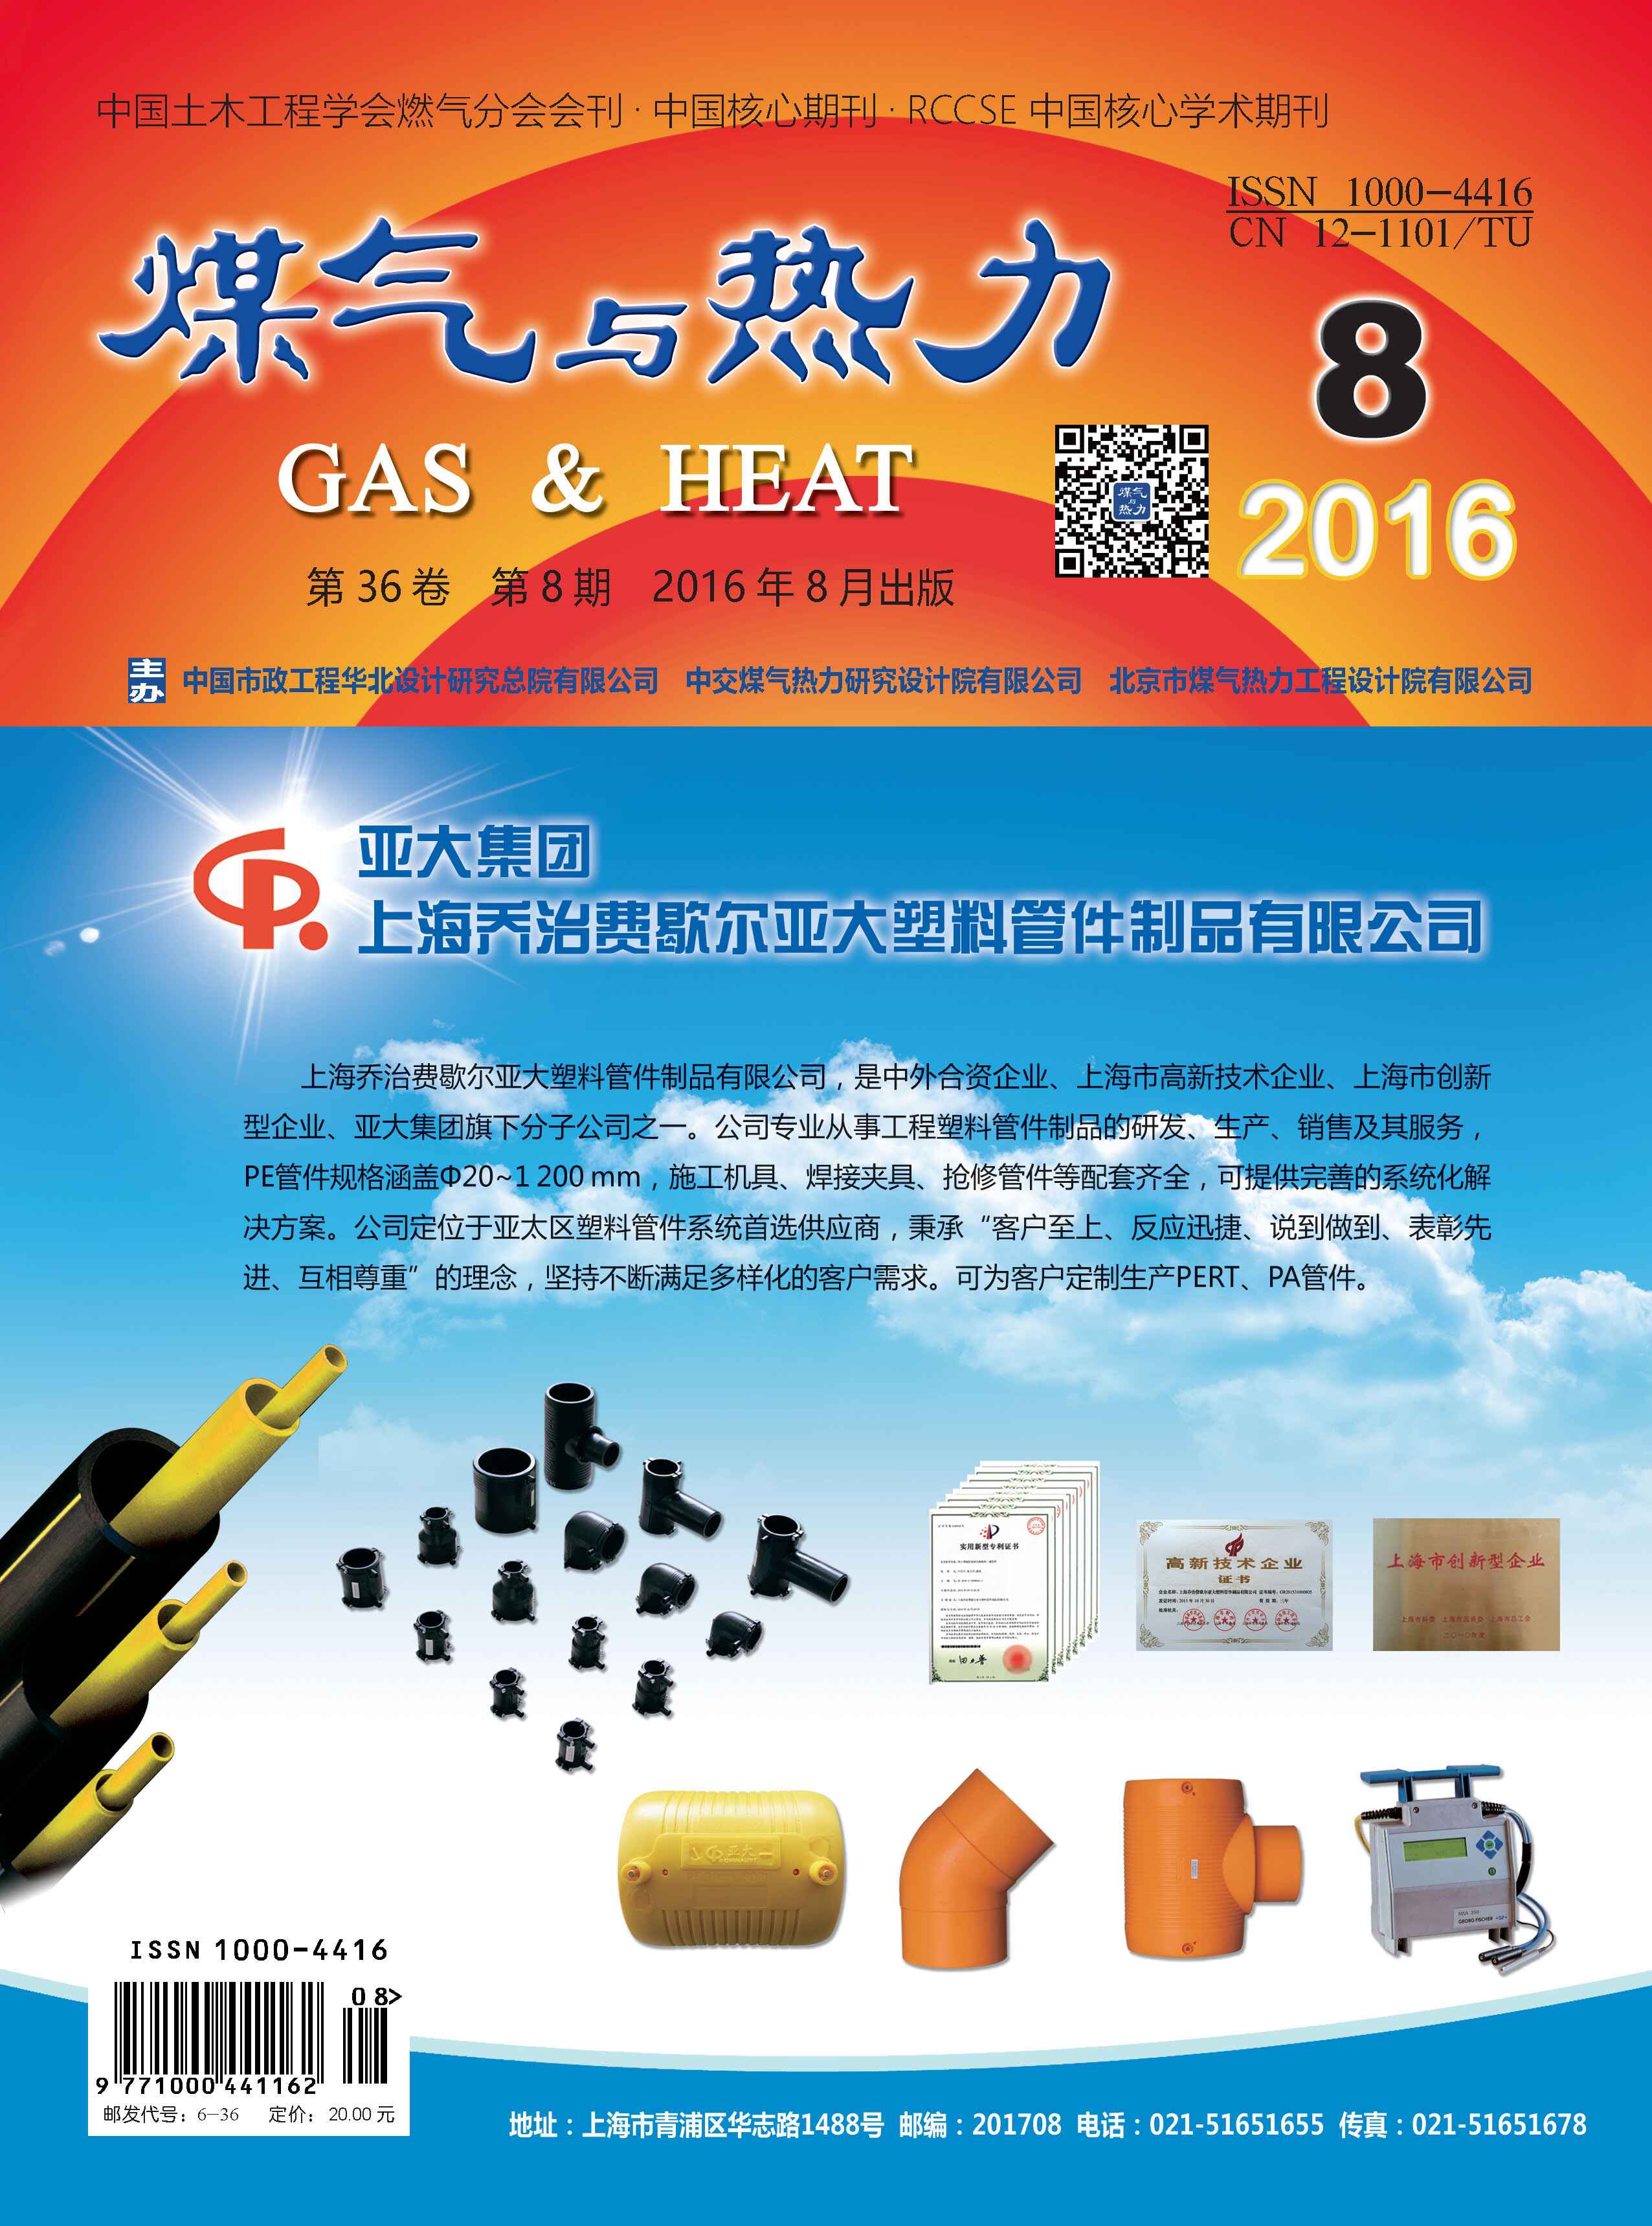 《煤气与热力》2016年8月刊